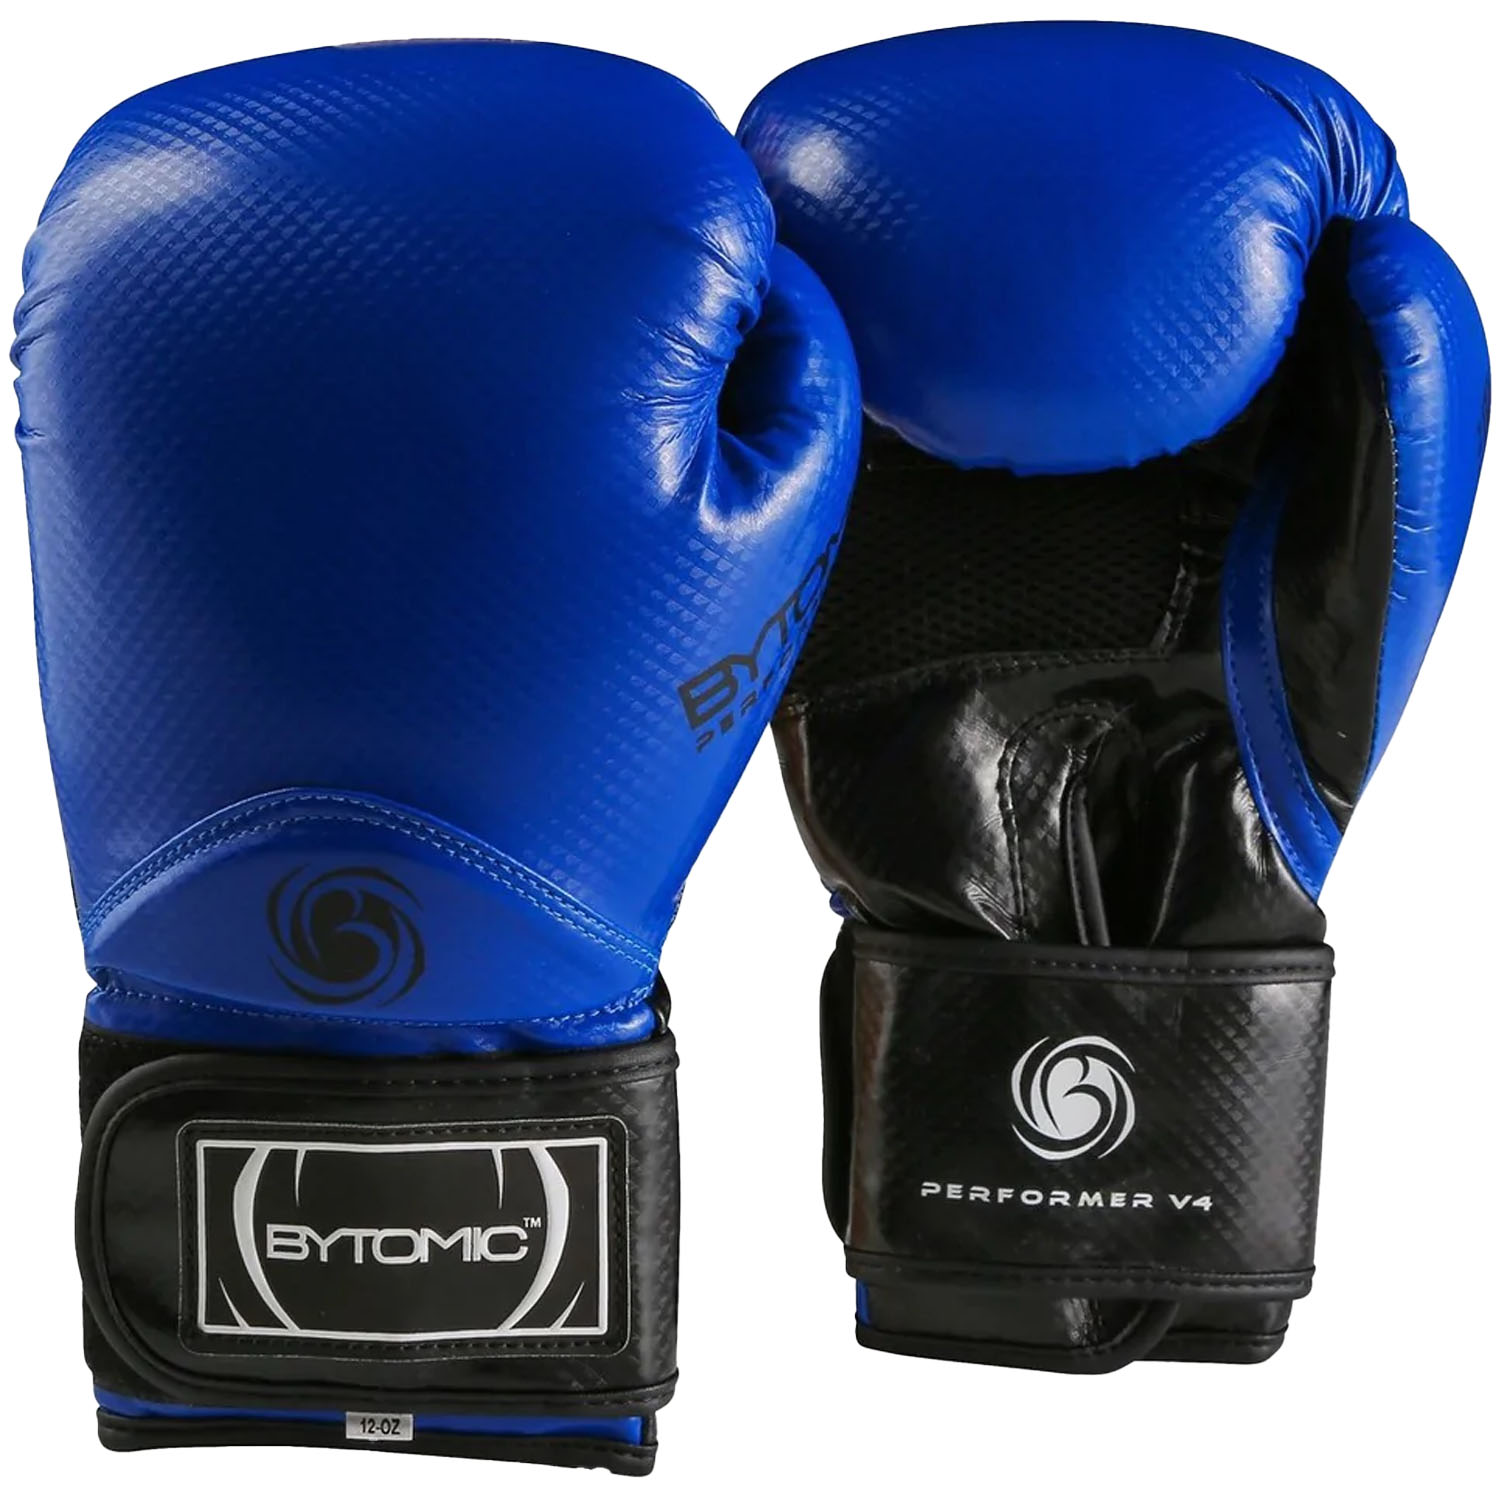 Bytomic Boxing Gloves, Performer, V4, blue